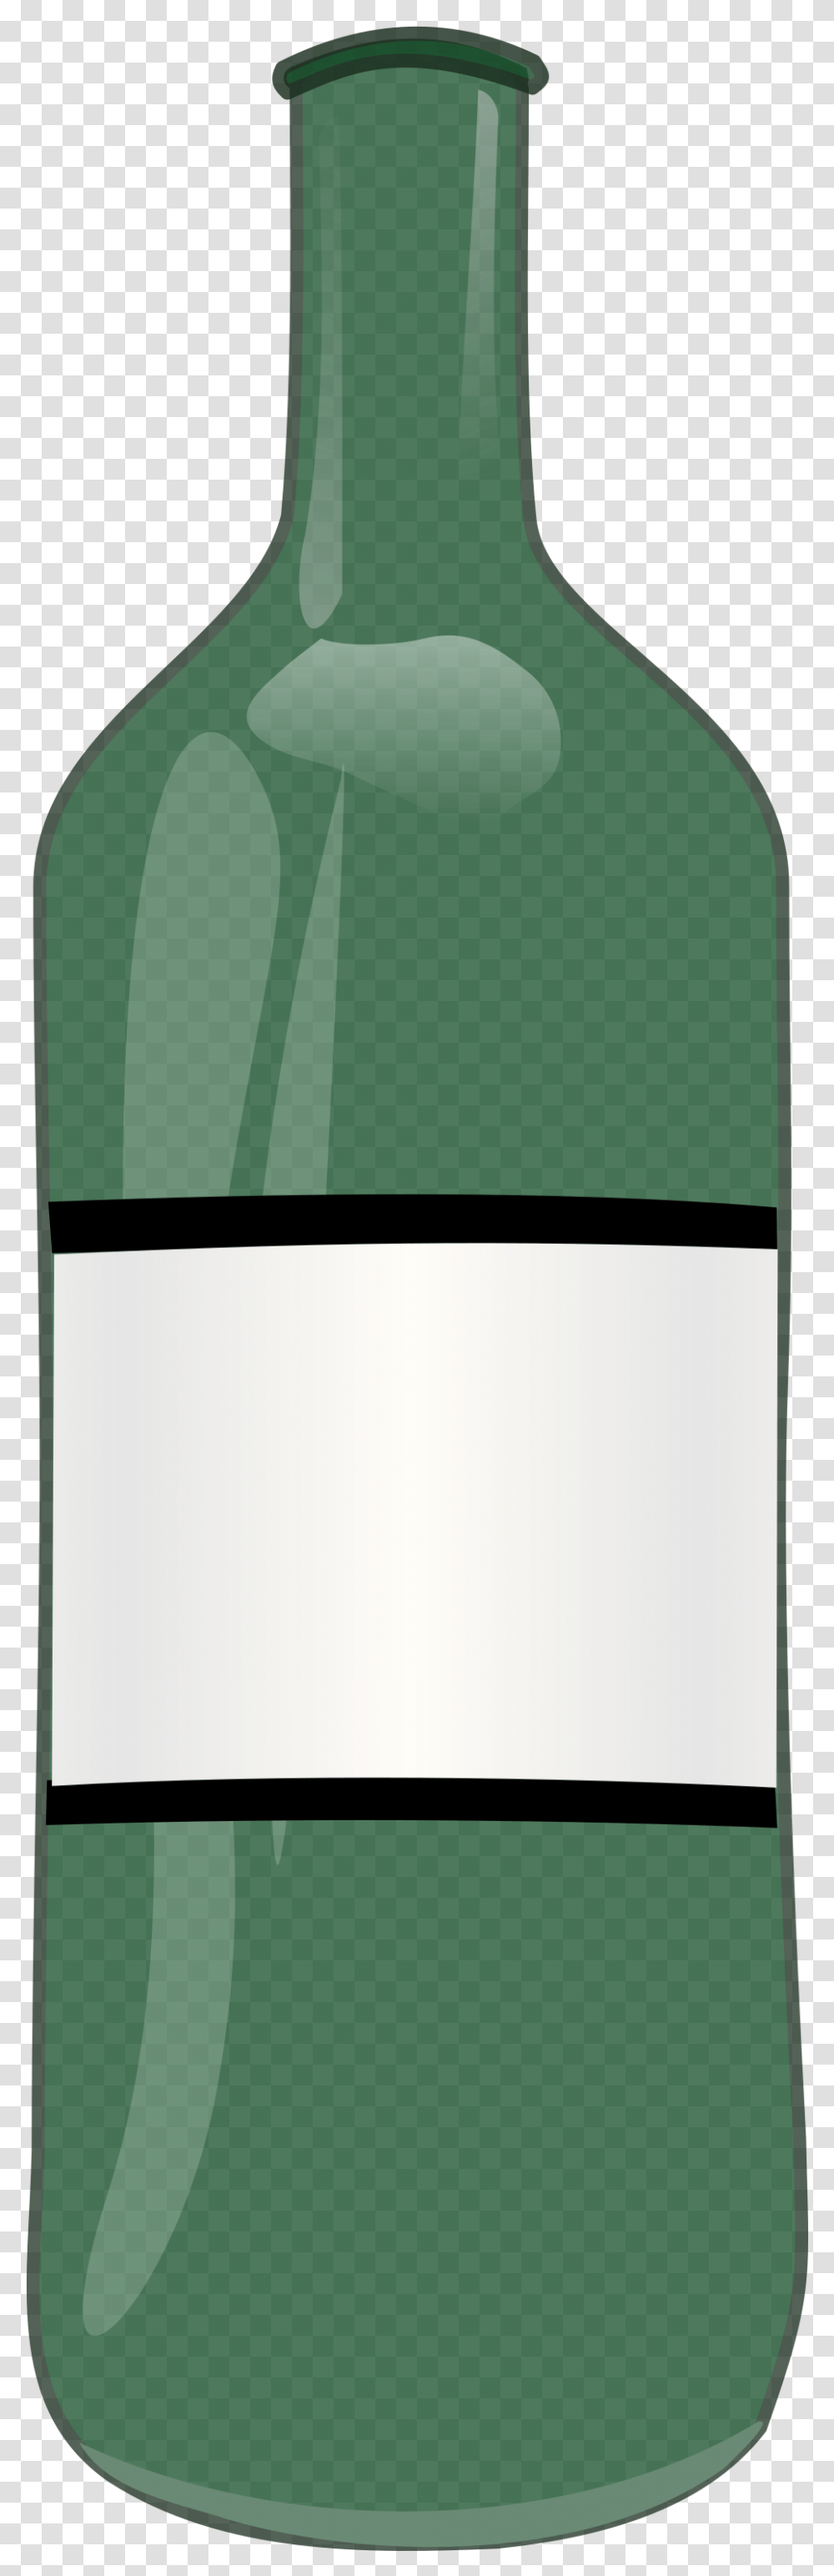 Wine Bottle Clip Arts Bottle Clipart, Alcohol, Beverage, Drink, Shovel Transparent Png